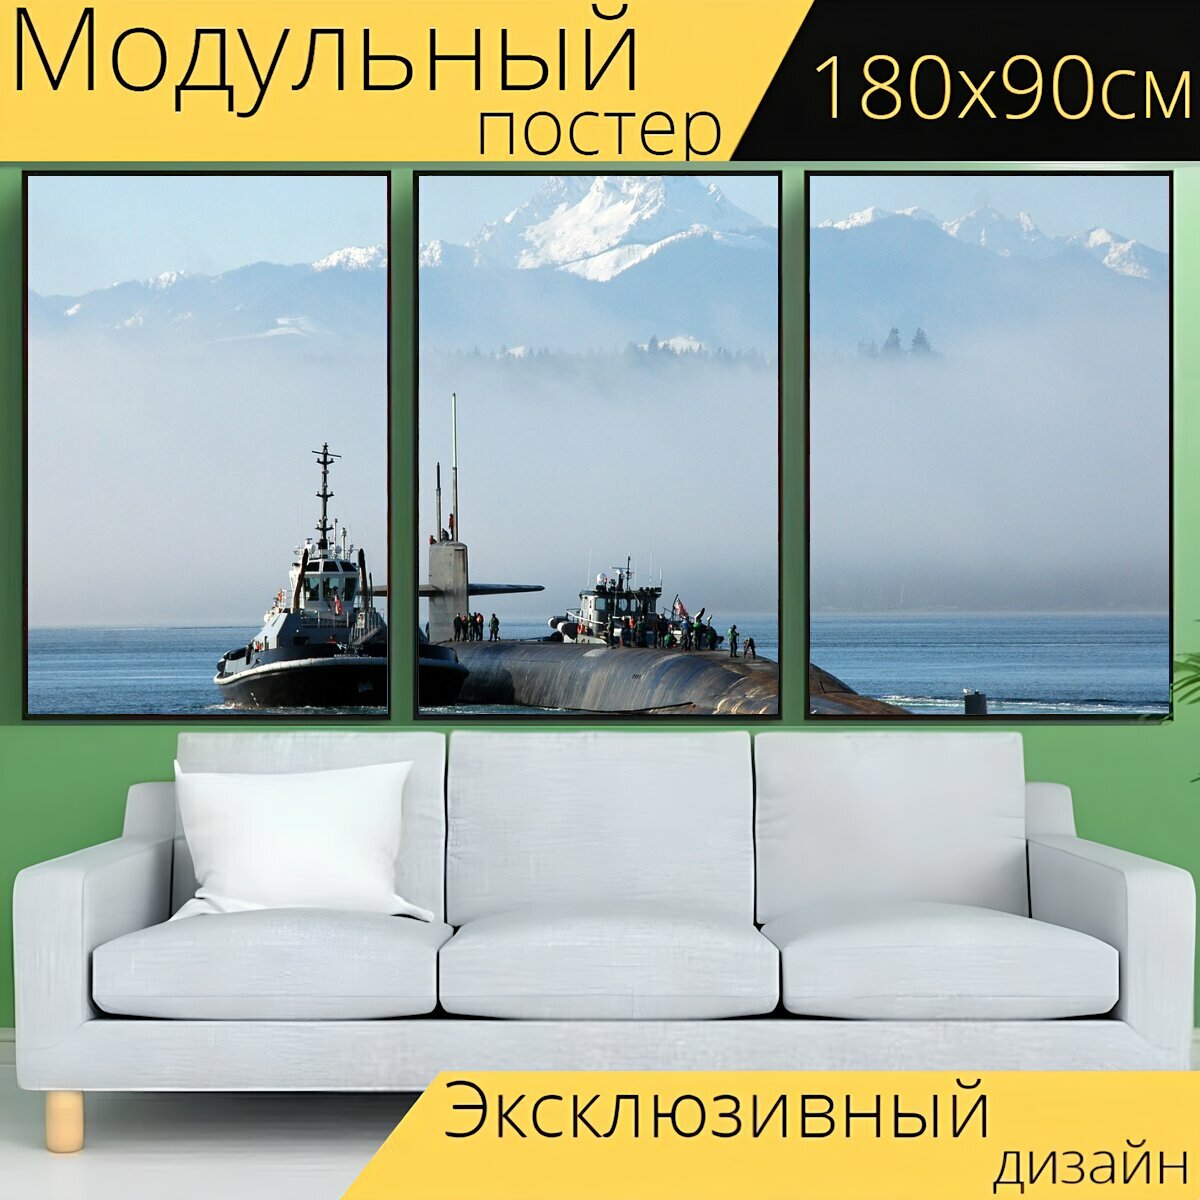 Модульный постер "Подводная лодка, бангор, вашингтон" 180 x 90 см. для интерьера